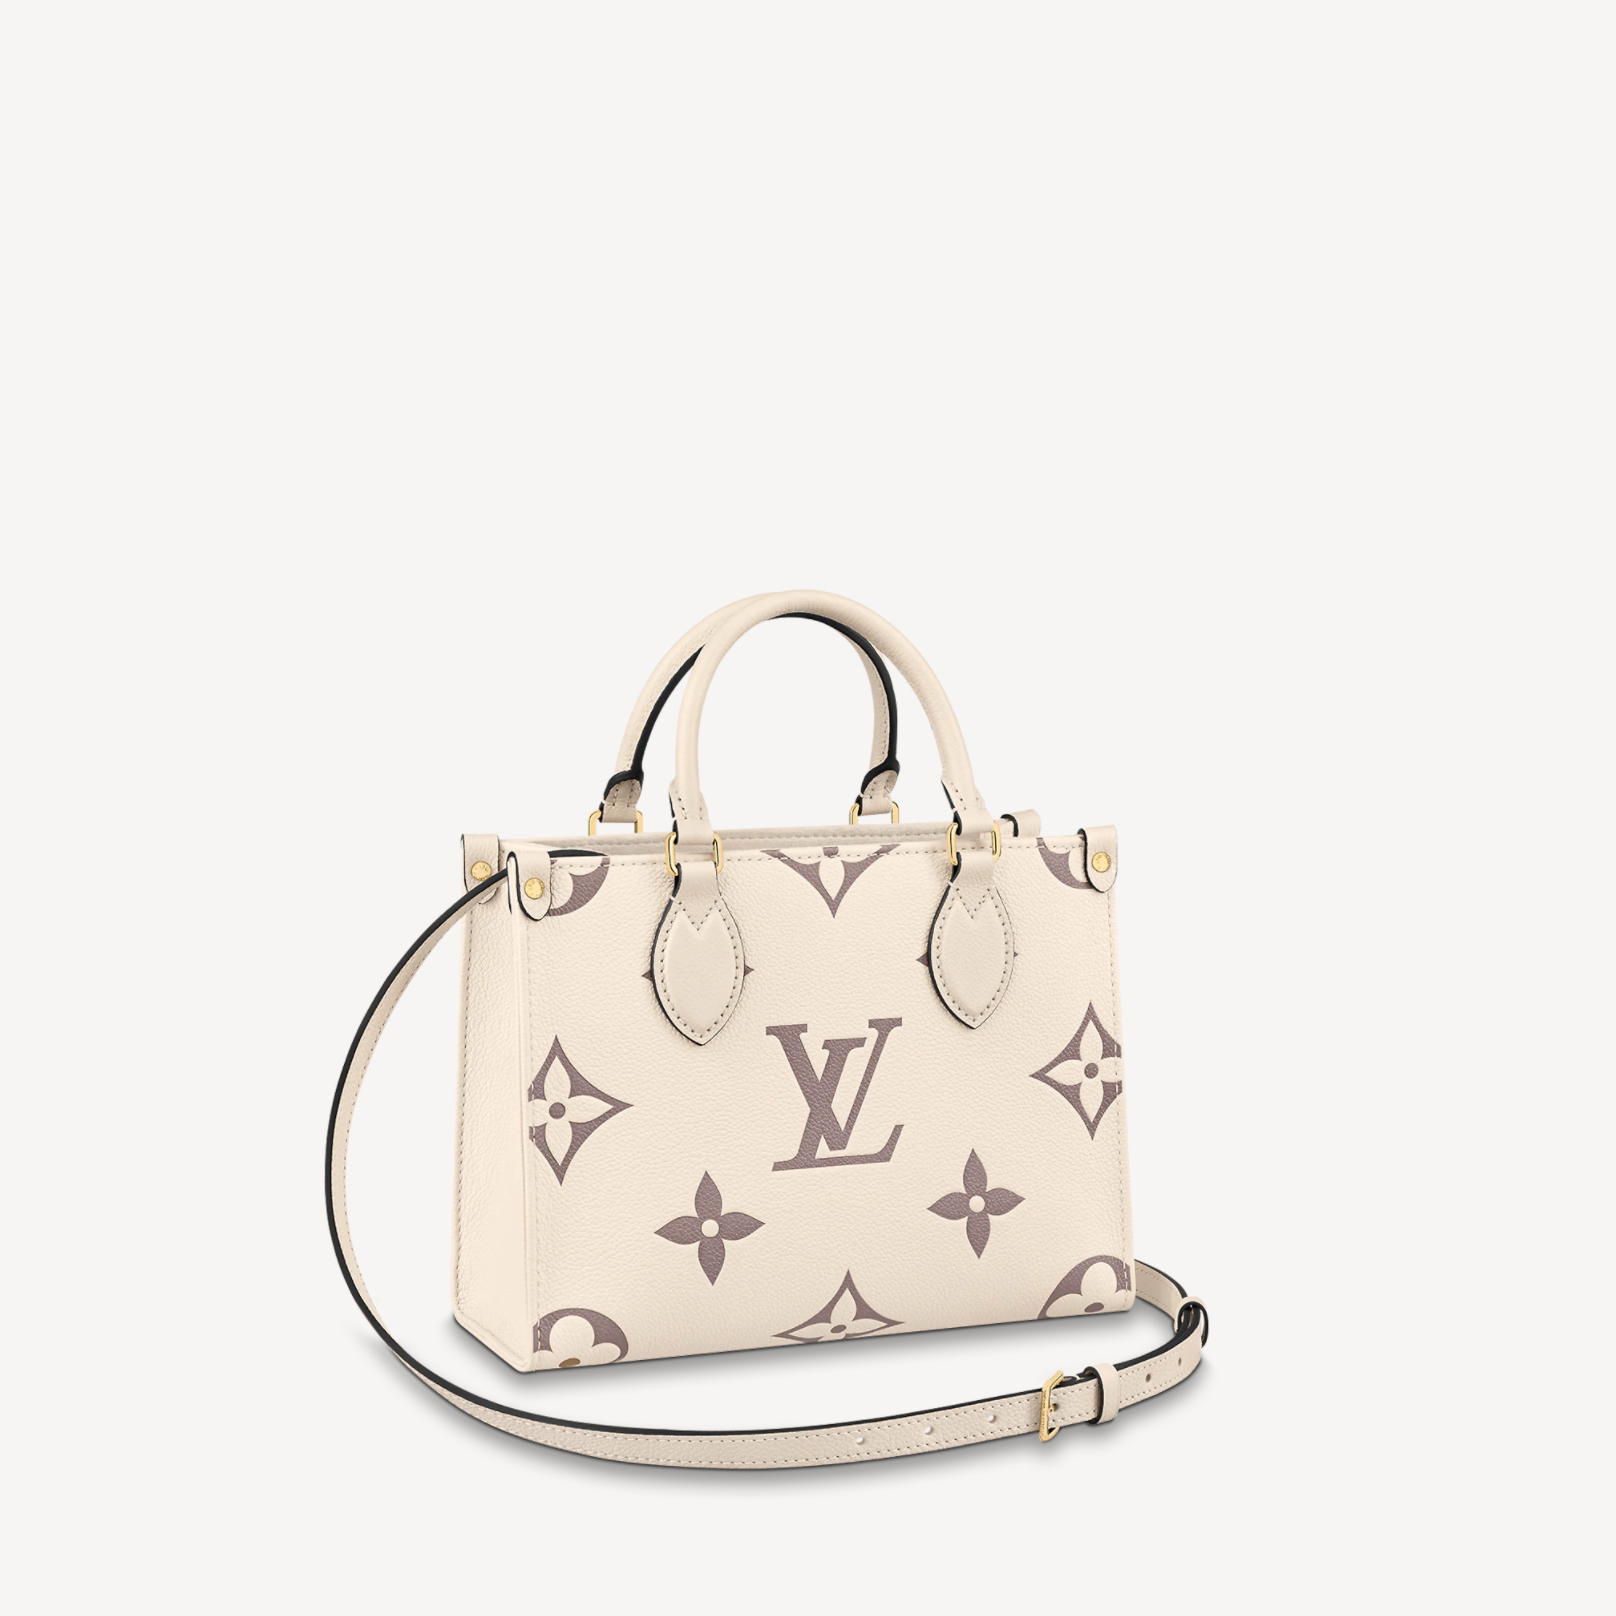 lv handbags for women white